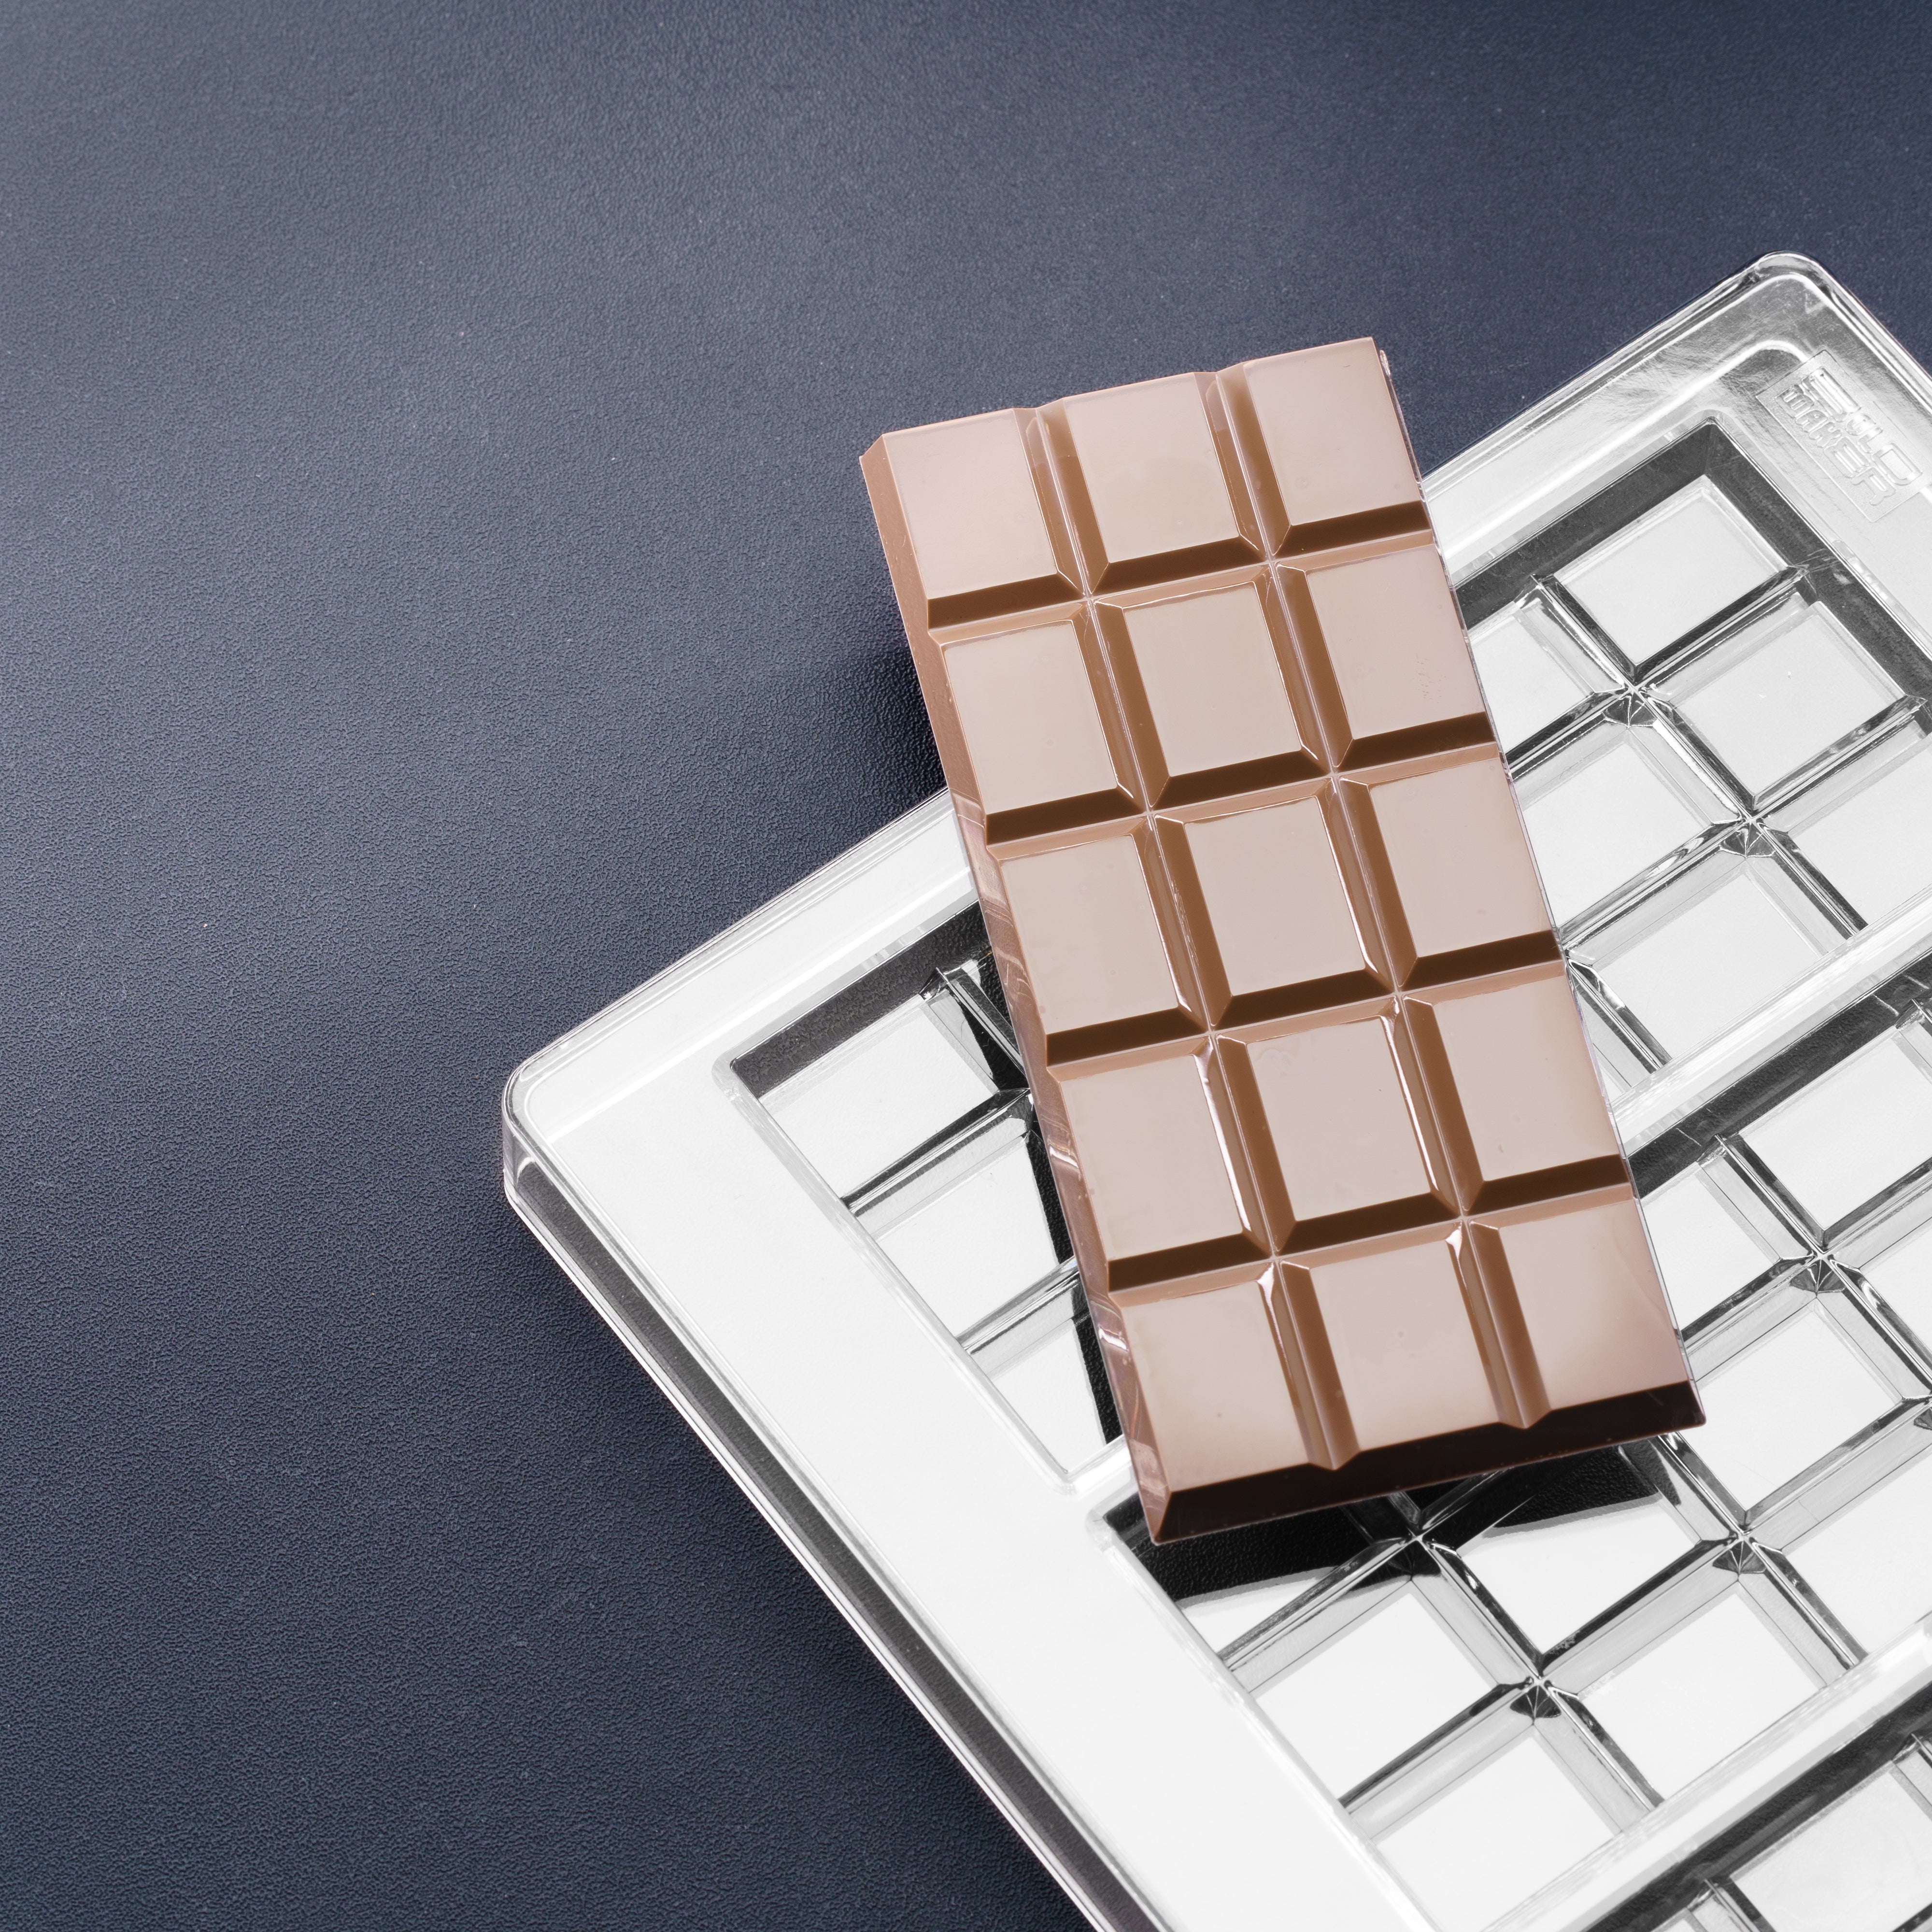 Chocolate Bar Molds - Over 250 choices